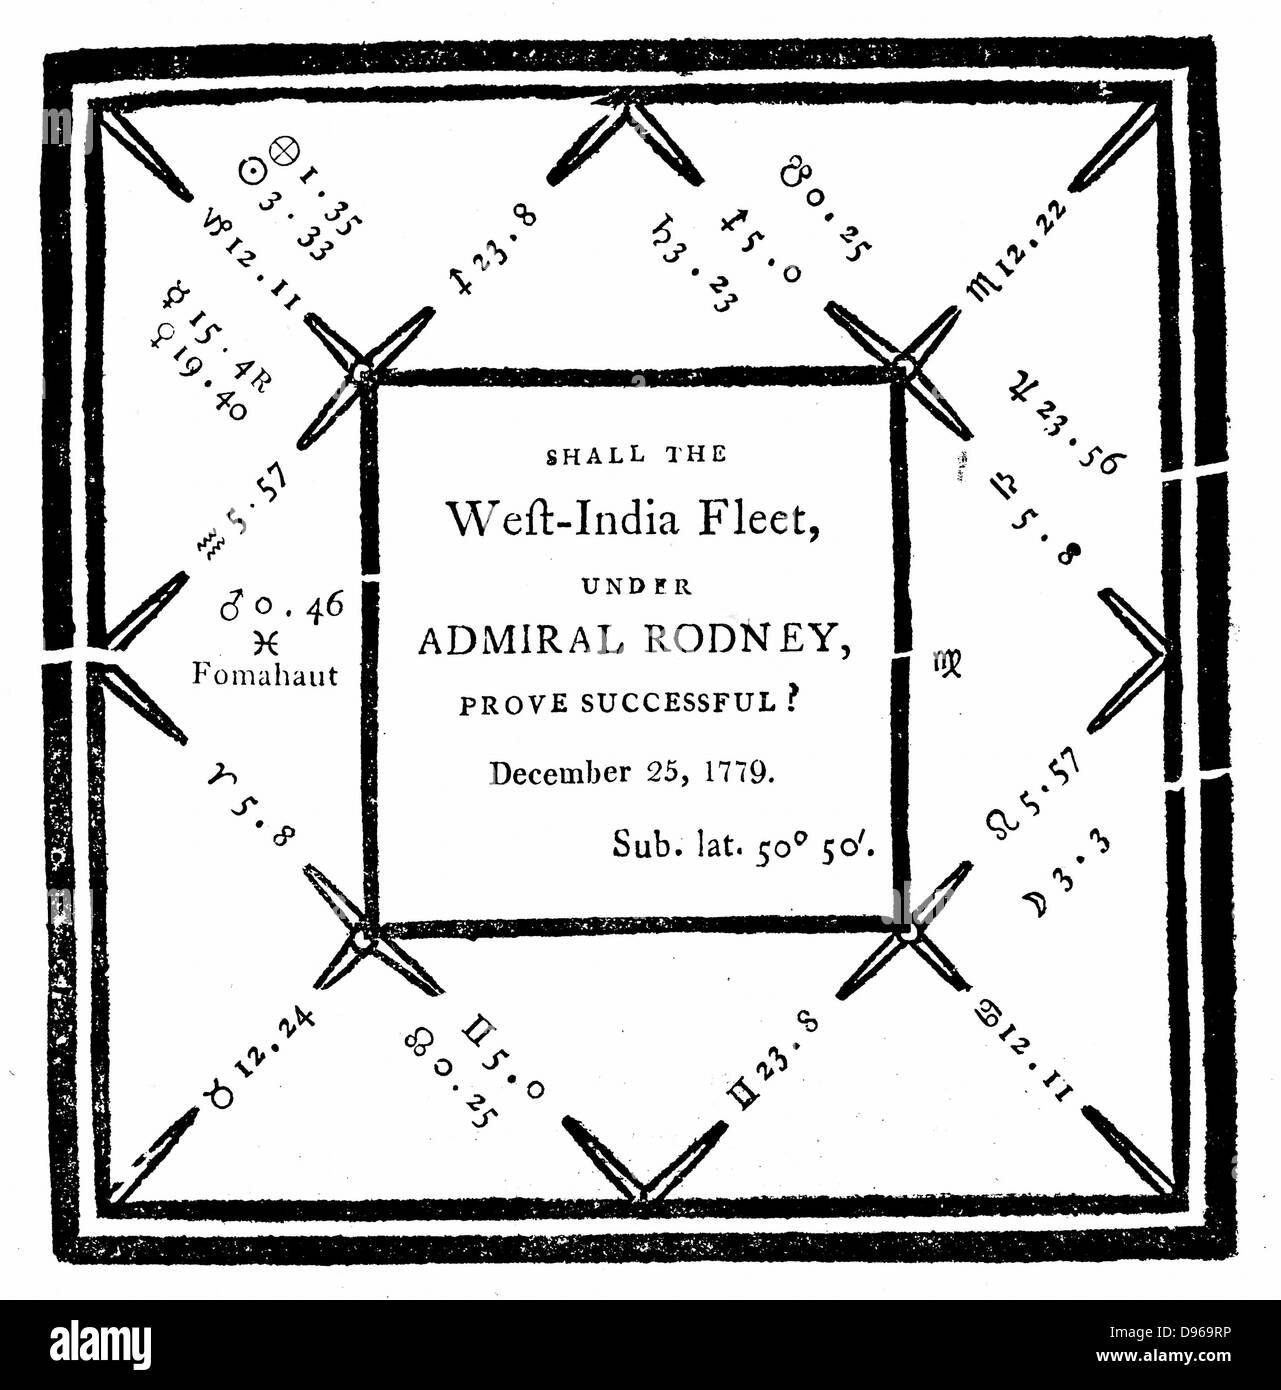 Horoskop von E vielleicht im Jahr 1779 auf Antrag der "Einige naval Herren', um vorauszusagen, dass die British West Indies Flotte unter Admiral Rodney siegreich sein würde. Stockfoto